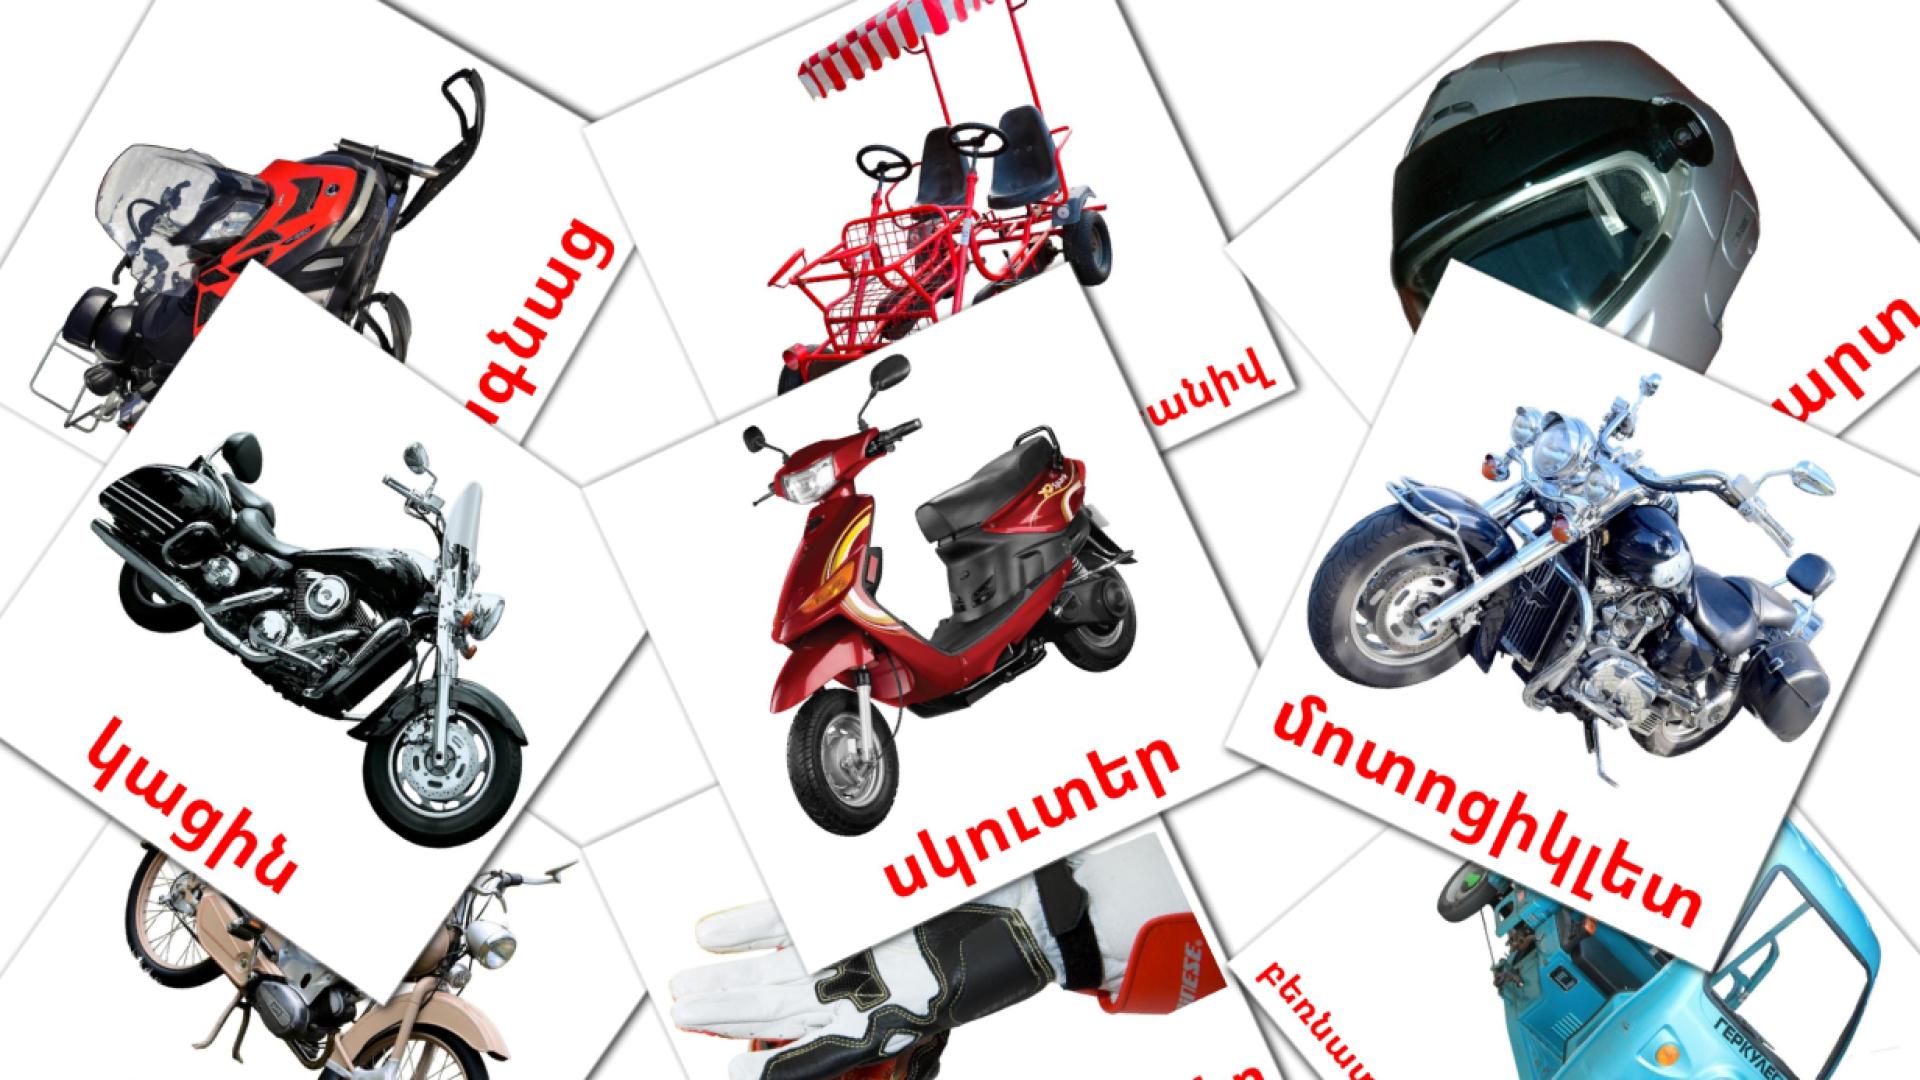 Motorfietsen - armeensee woordenschatkaarten